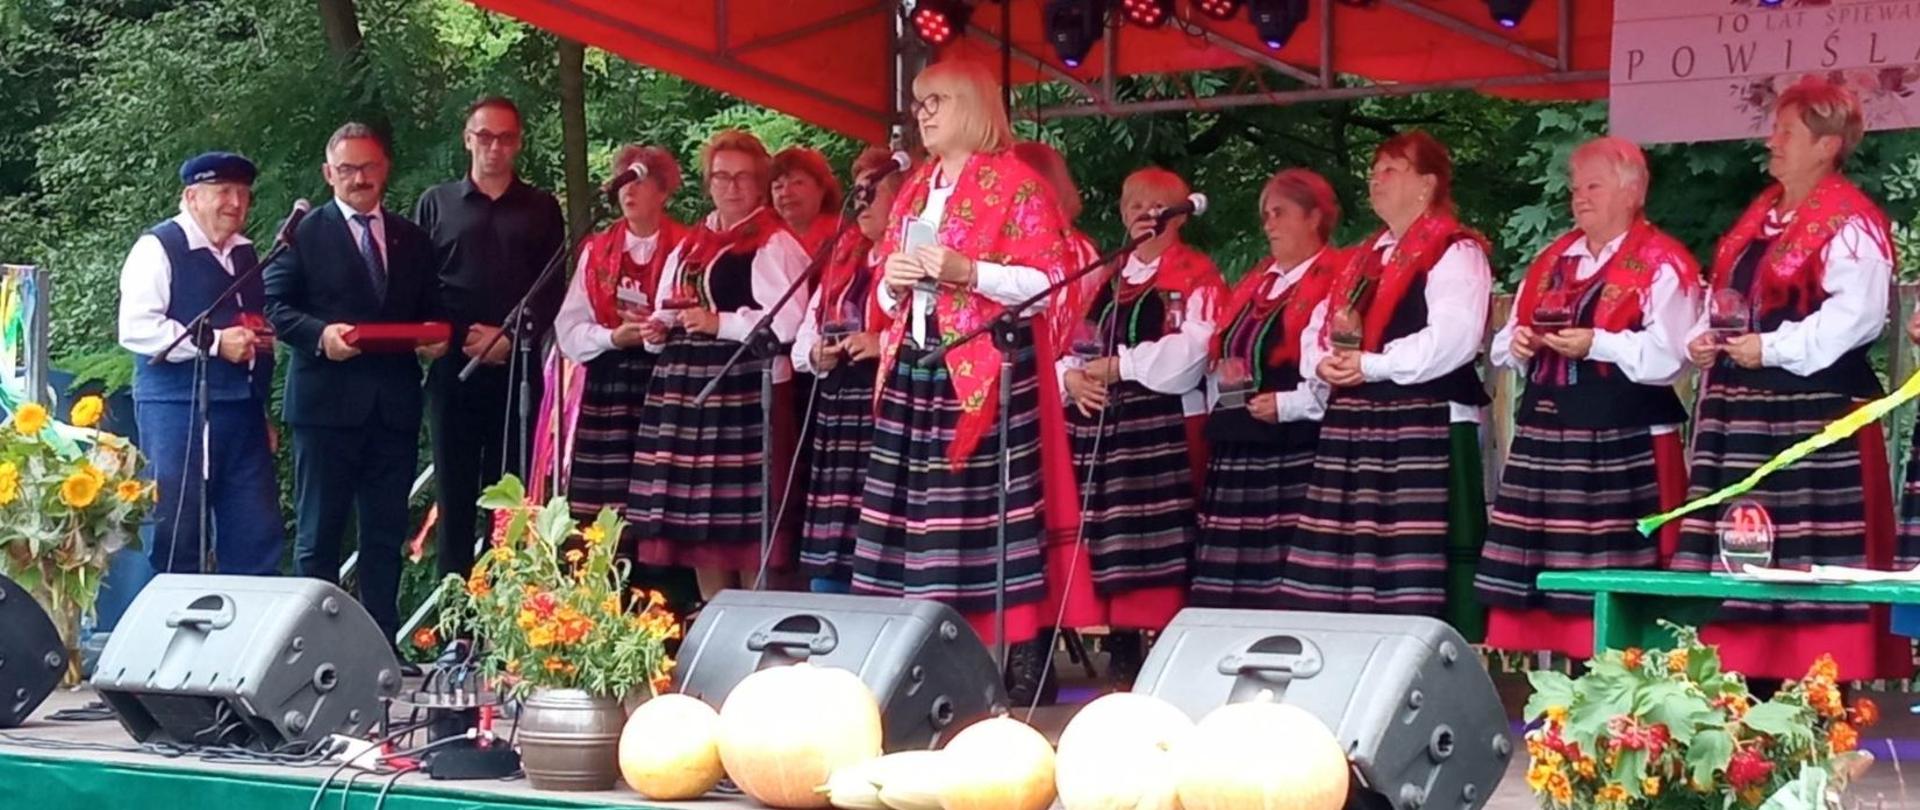 Zespół Powiślacy na scenie wydarzenia w towarzystwie Starosty Lipskiego.